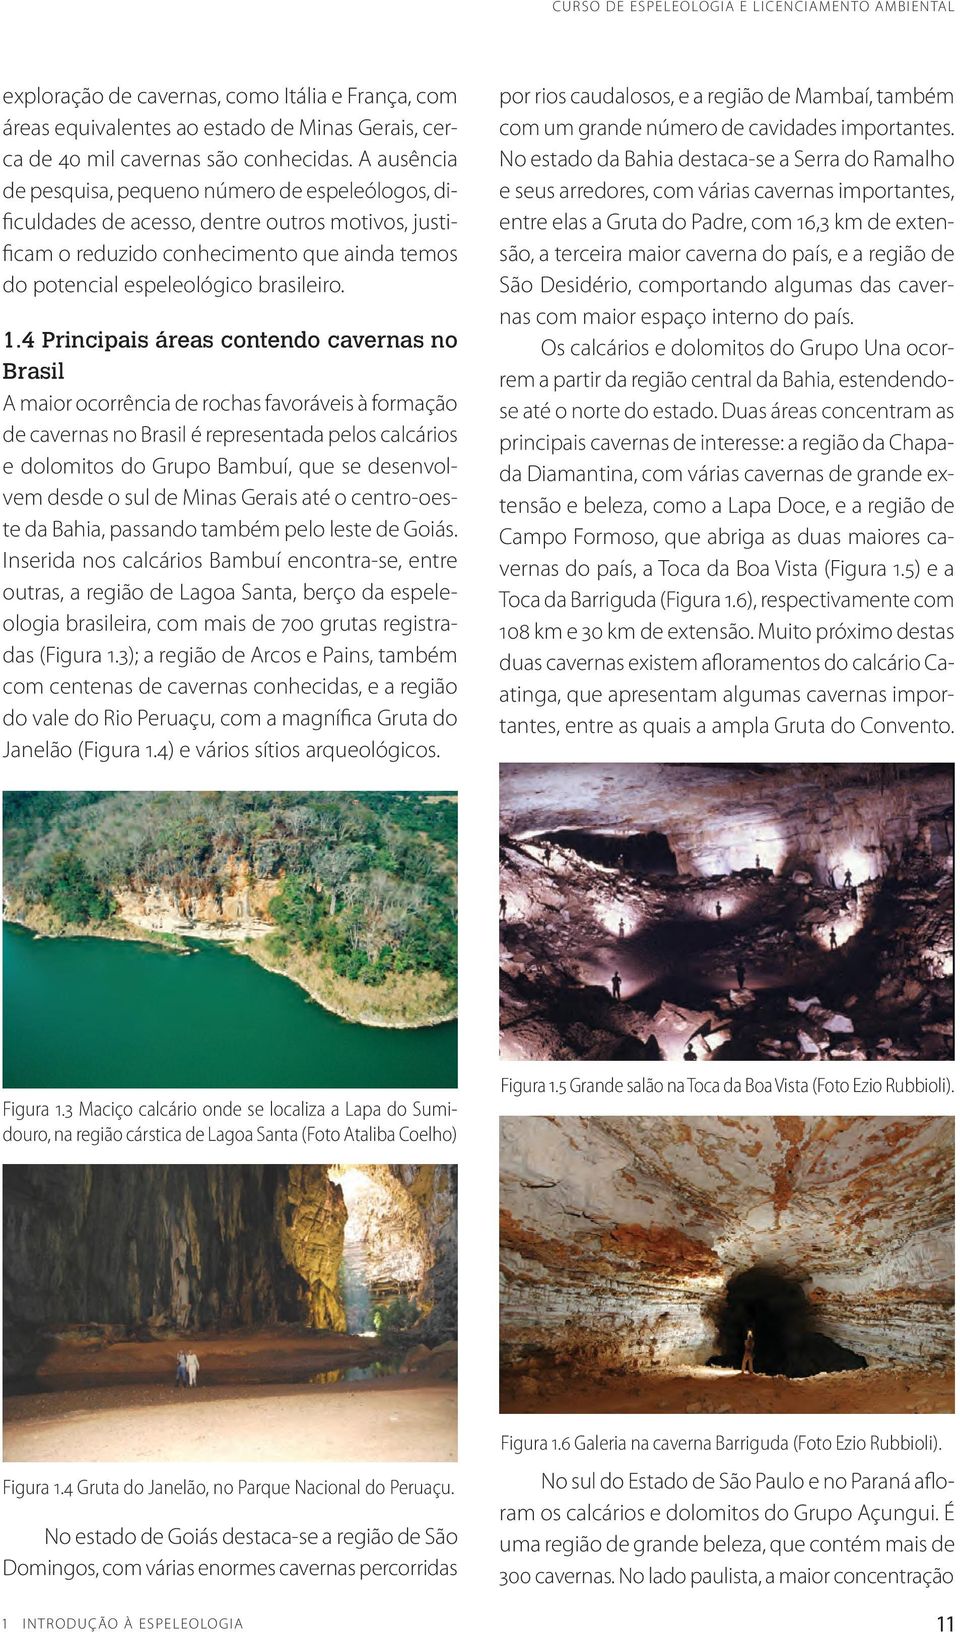 4 Principais áreas contendo cavernas no Brasil A maior ocorrência de rochas favoráveis à formação de cavernas no Brasil é representada pelos calcários e dolomitos do Grupo Bambuí, que se desenvolvem